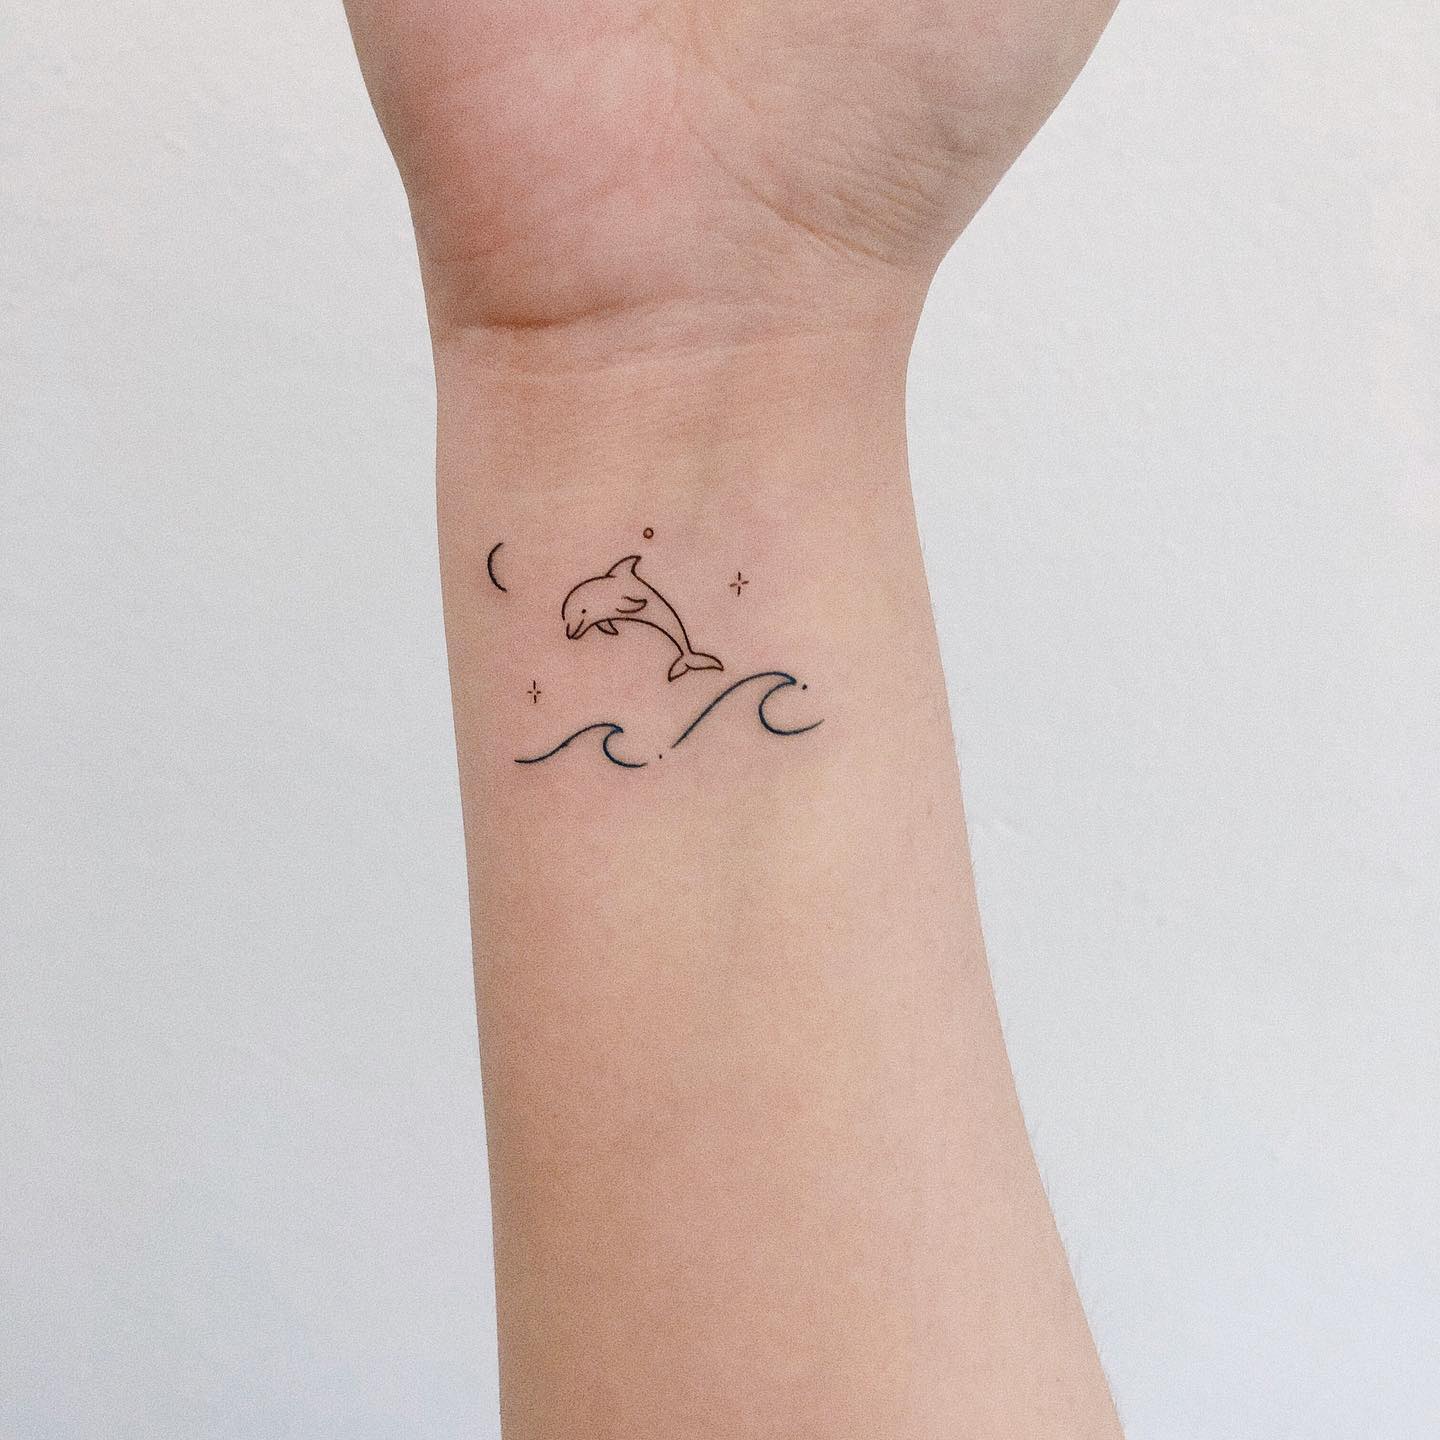 Small dolphin tattoo by rin tattooer